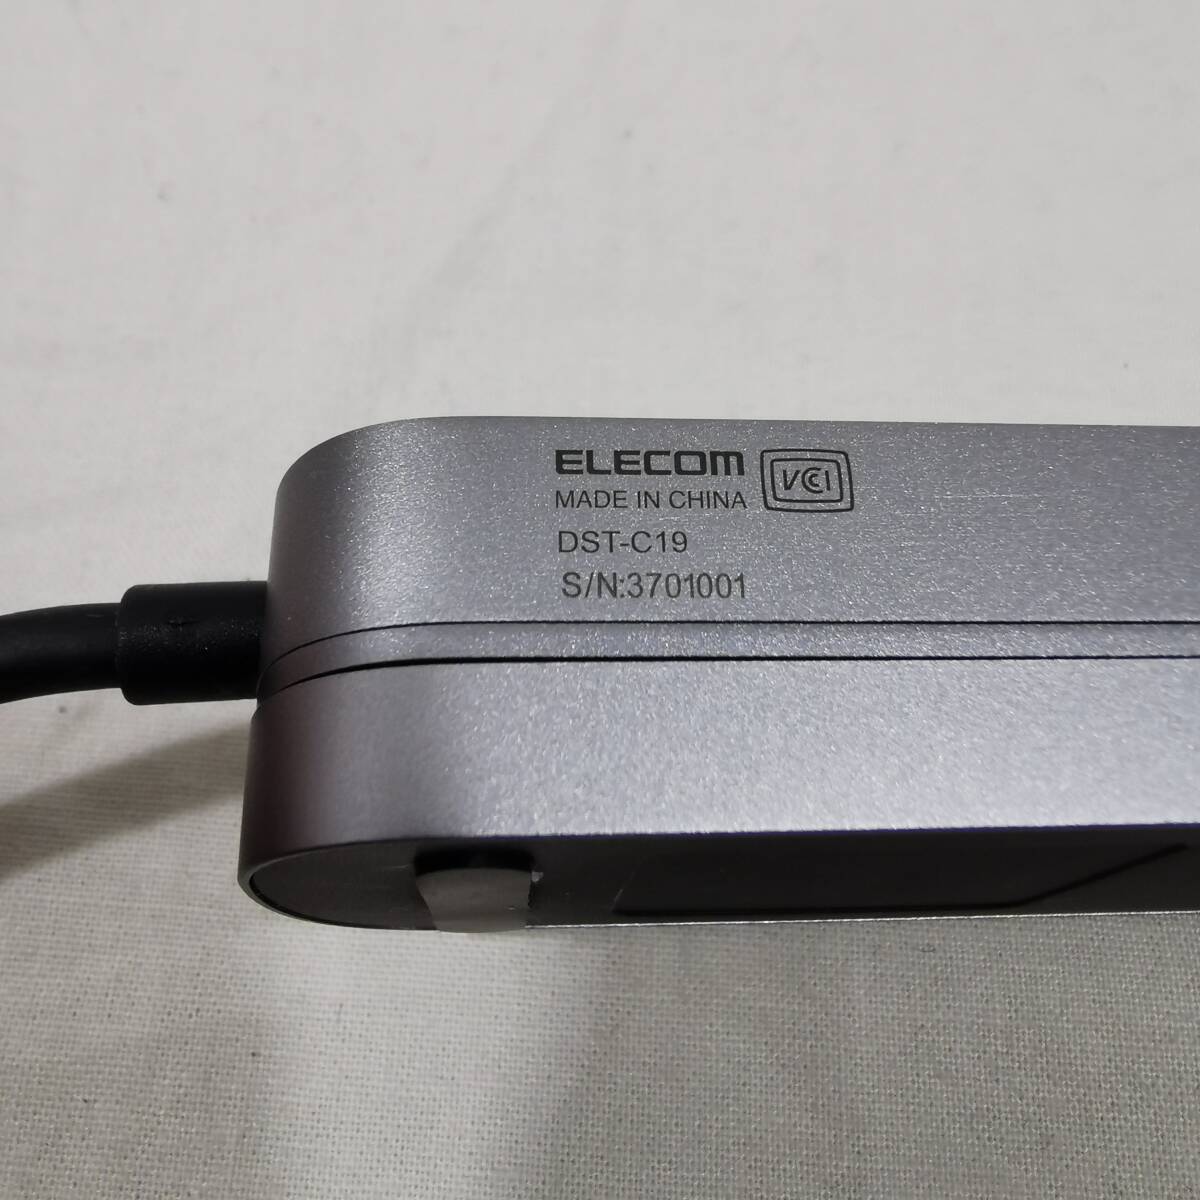 エレコム DST-C19 USB Type-C ハブ ドッキングステーション 5-in-1 データポート PD対応 USB3.1 Gen1×2ポート HDMI×1ポート USB-C×2の画像9